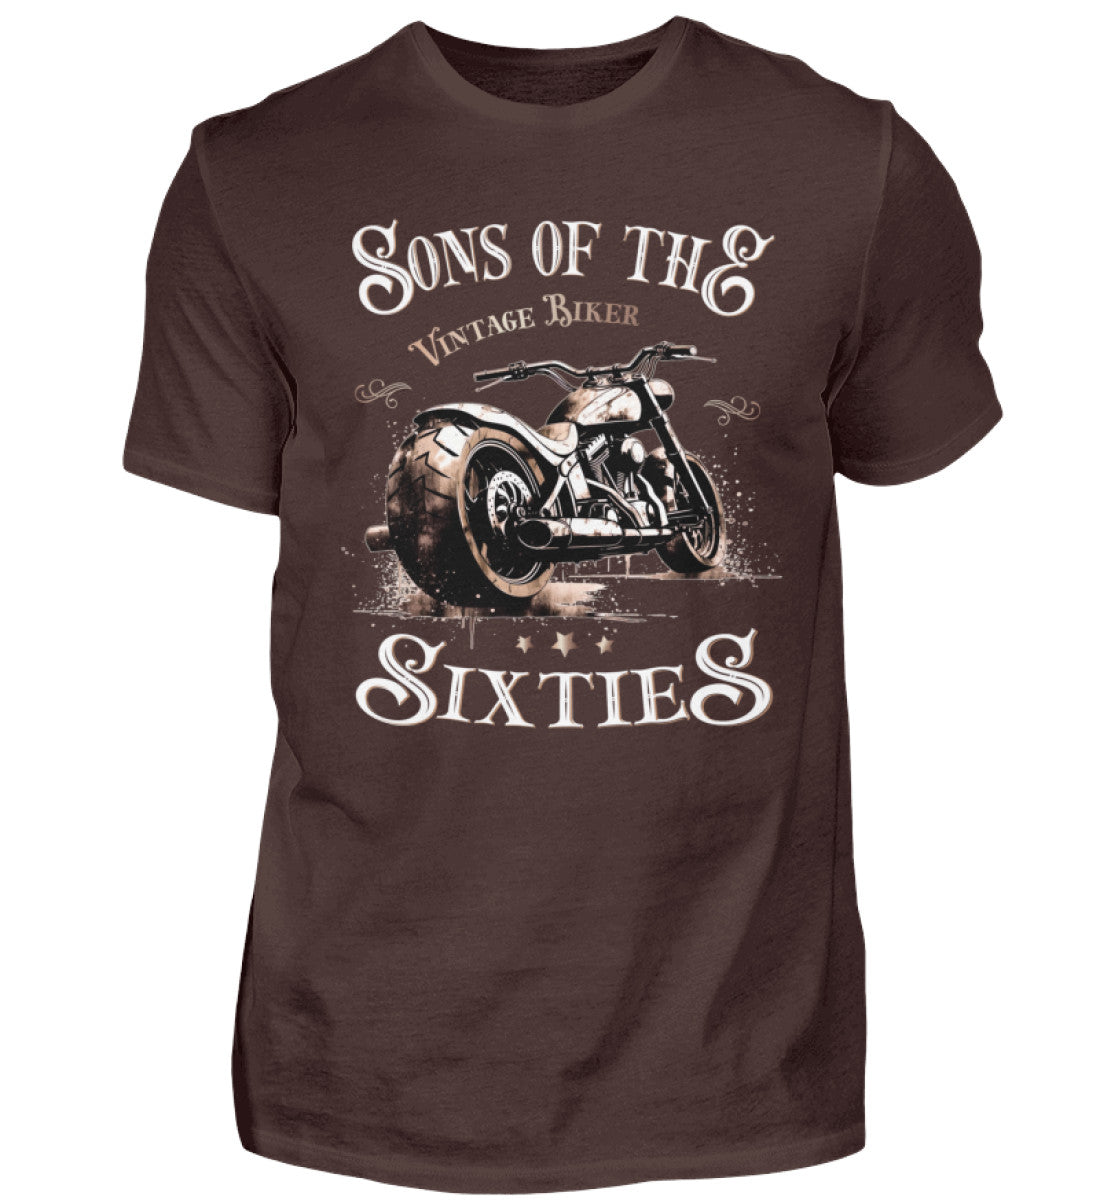 Ein Biker T-Shirt für Motorradfahrer von Wingbikers mit dem Aufdruck, Sons of the Sixties - Vintage Biker, in braun.